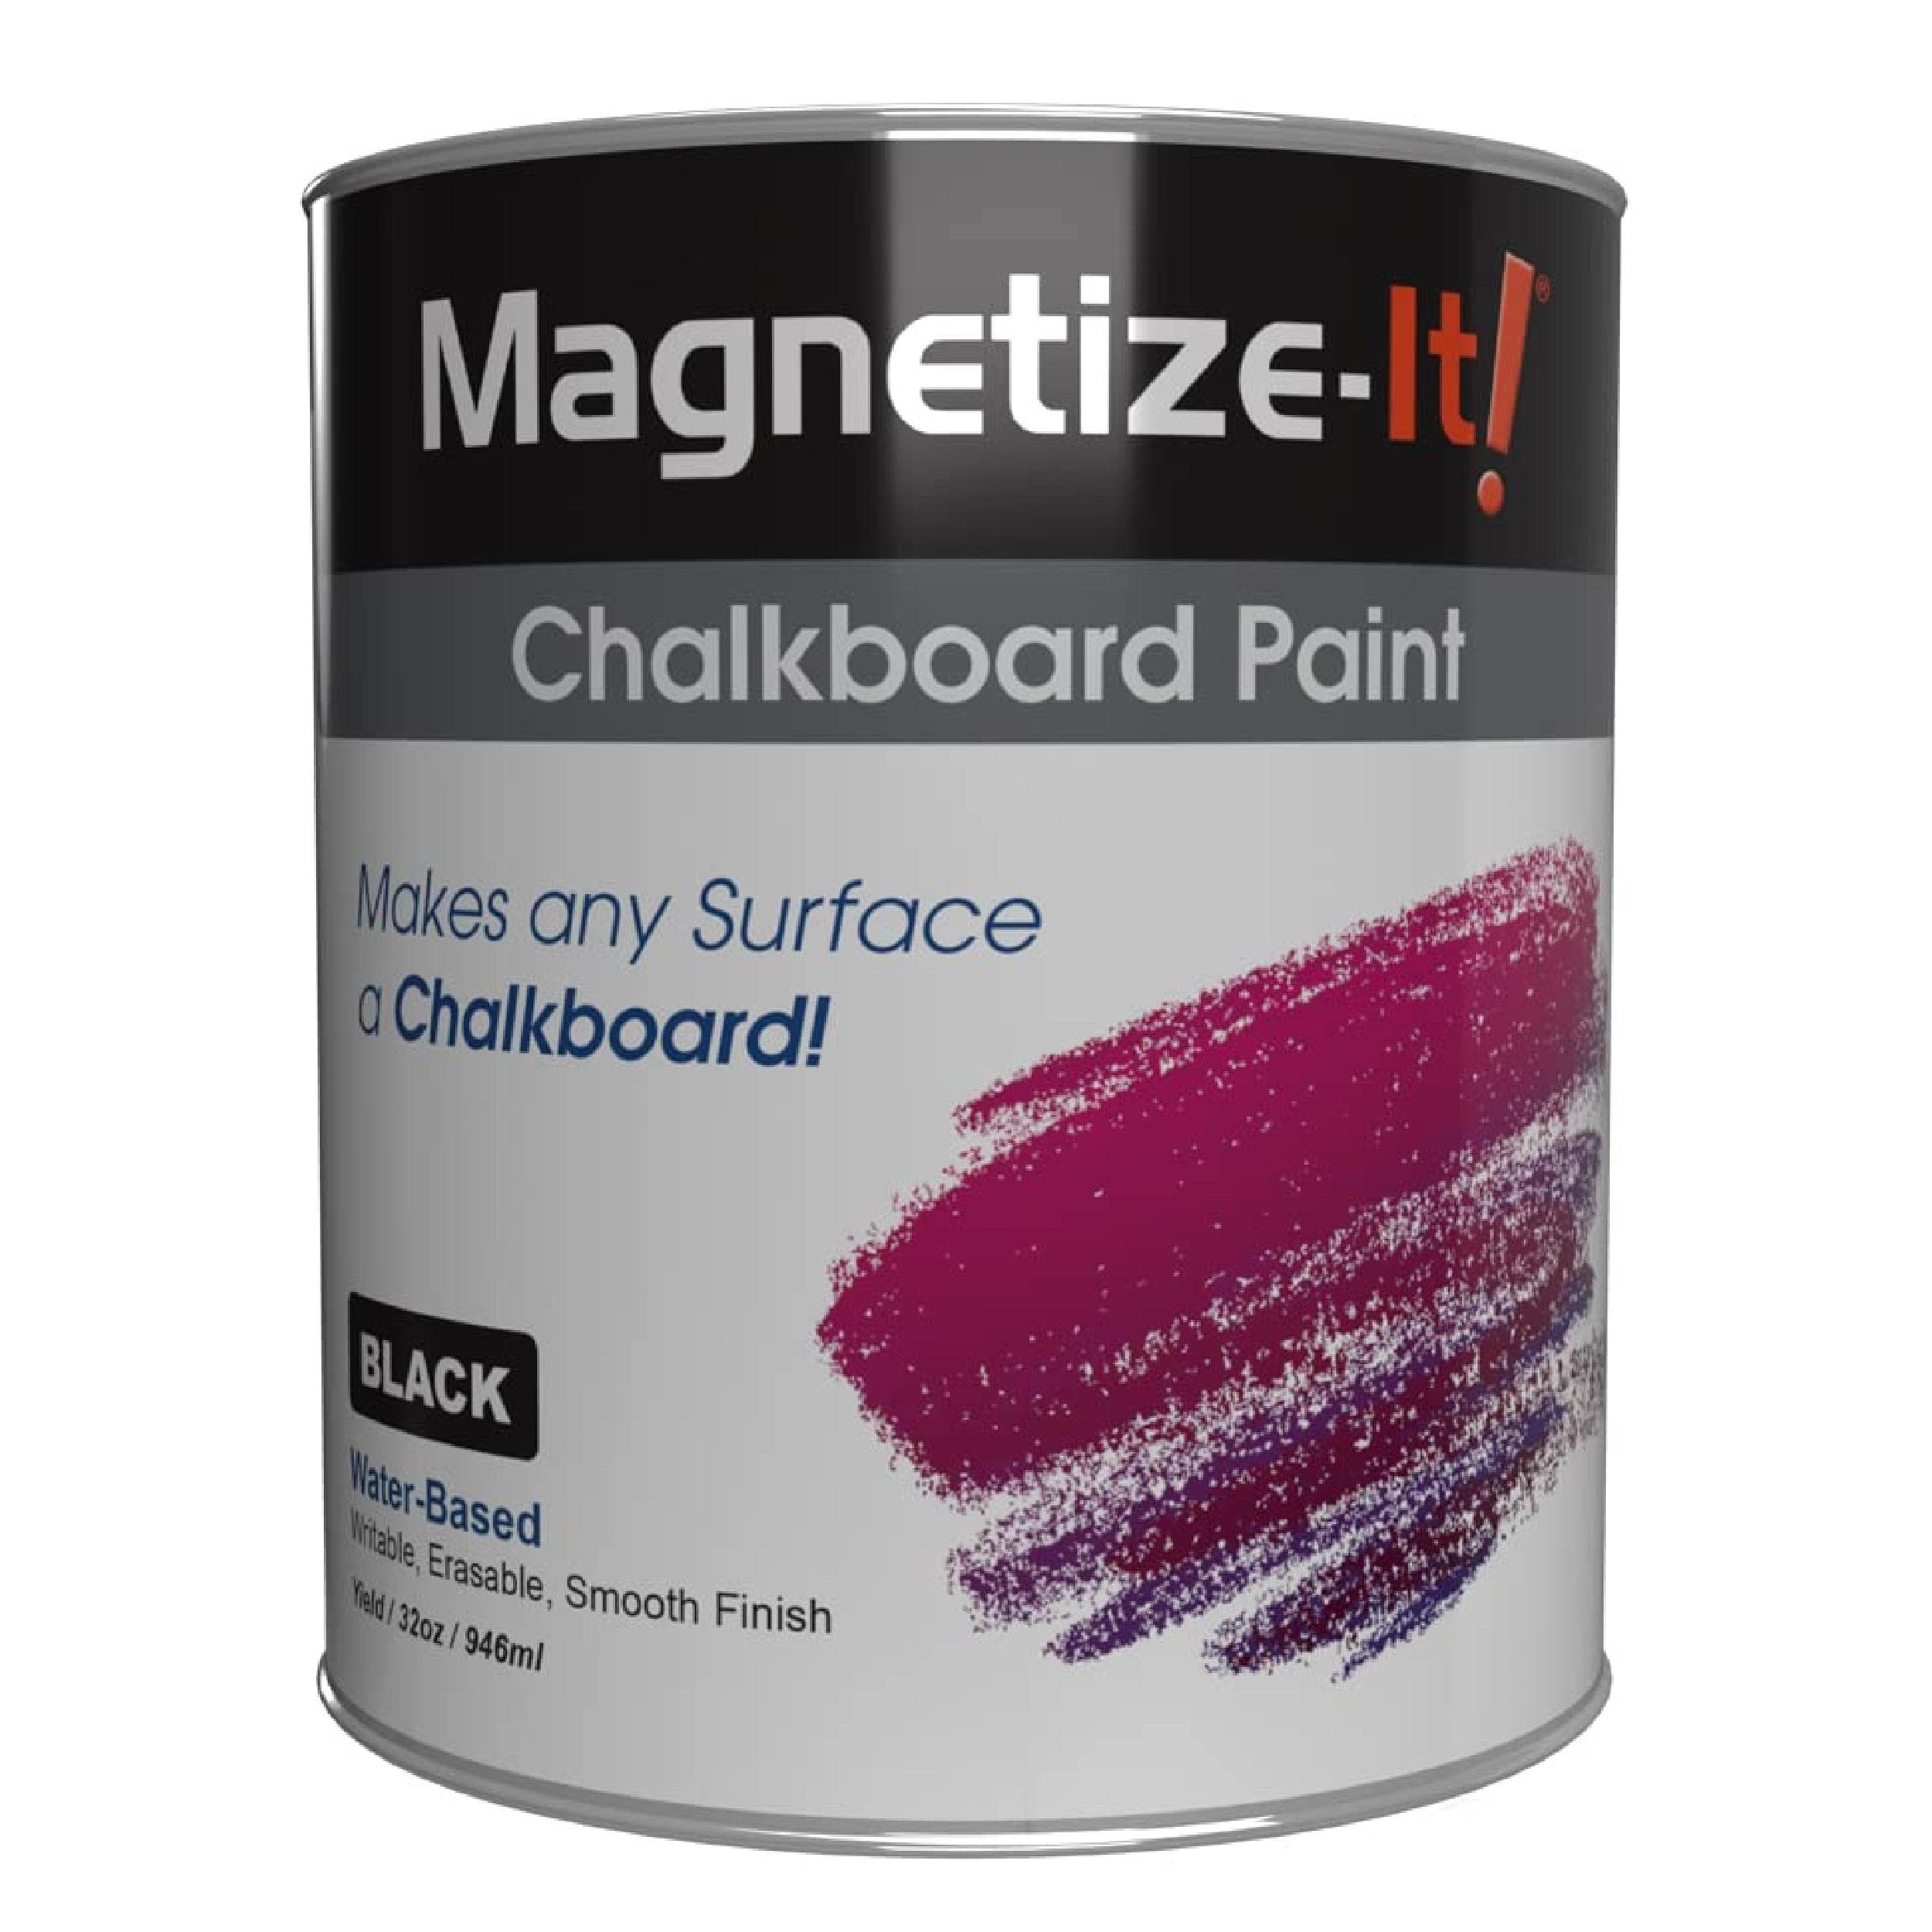 Magnetize-it! Chalkboard Paint, 32oz, MICBP-2292